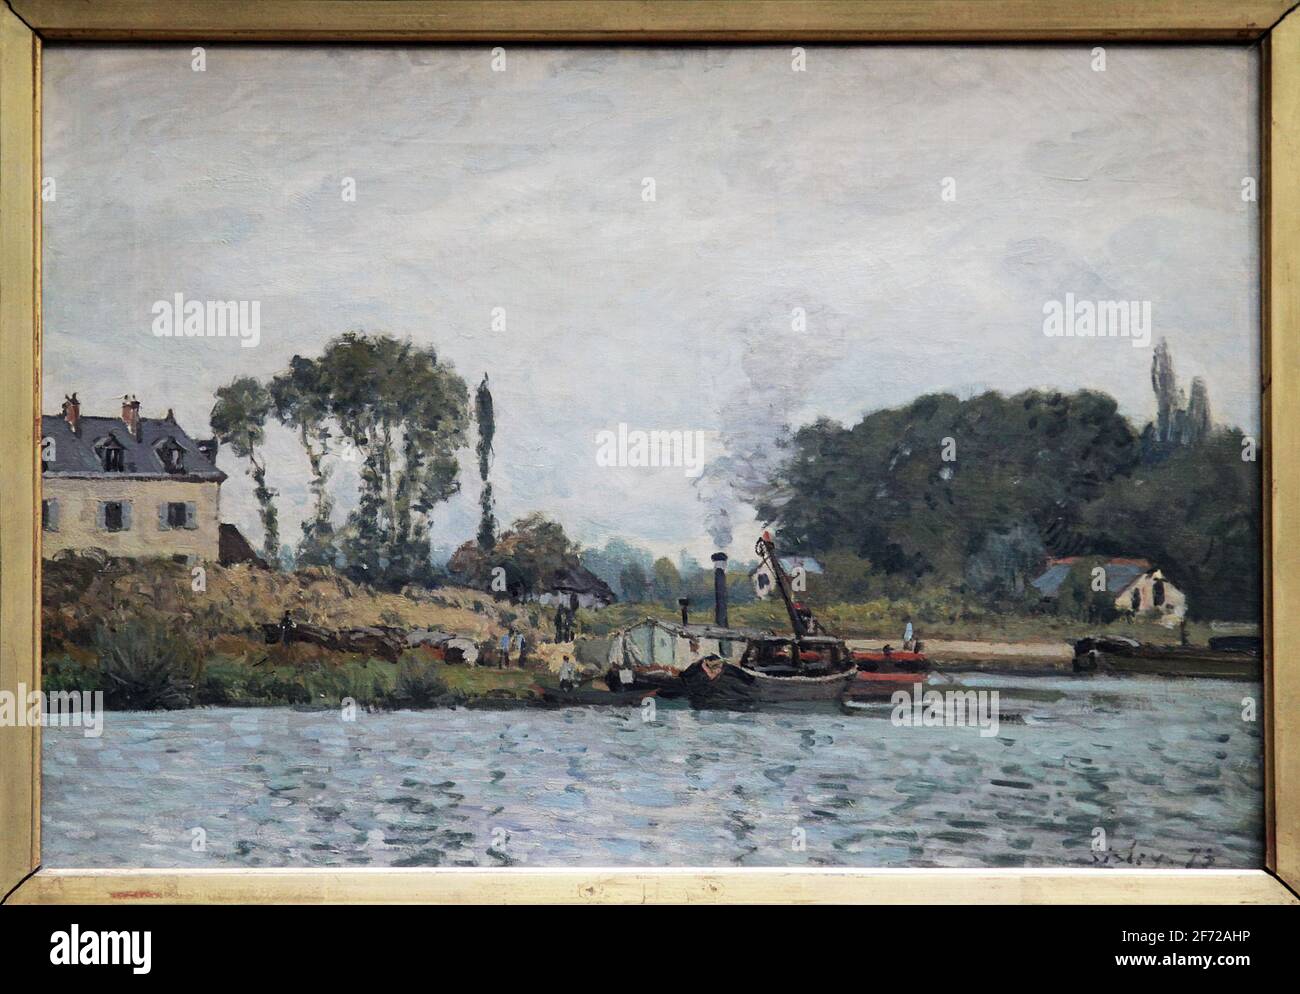 Boote an der Schleuse in Bougival 1873 von Alfred Sisley 1839-1899.Impressionistischer Landschaftsmaler, geboren in Frankreich, aber mit britischer Staatsbürgerschaft. Stockfoto